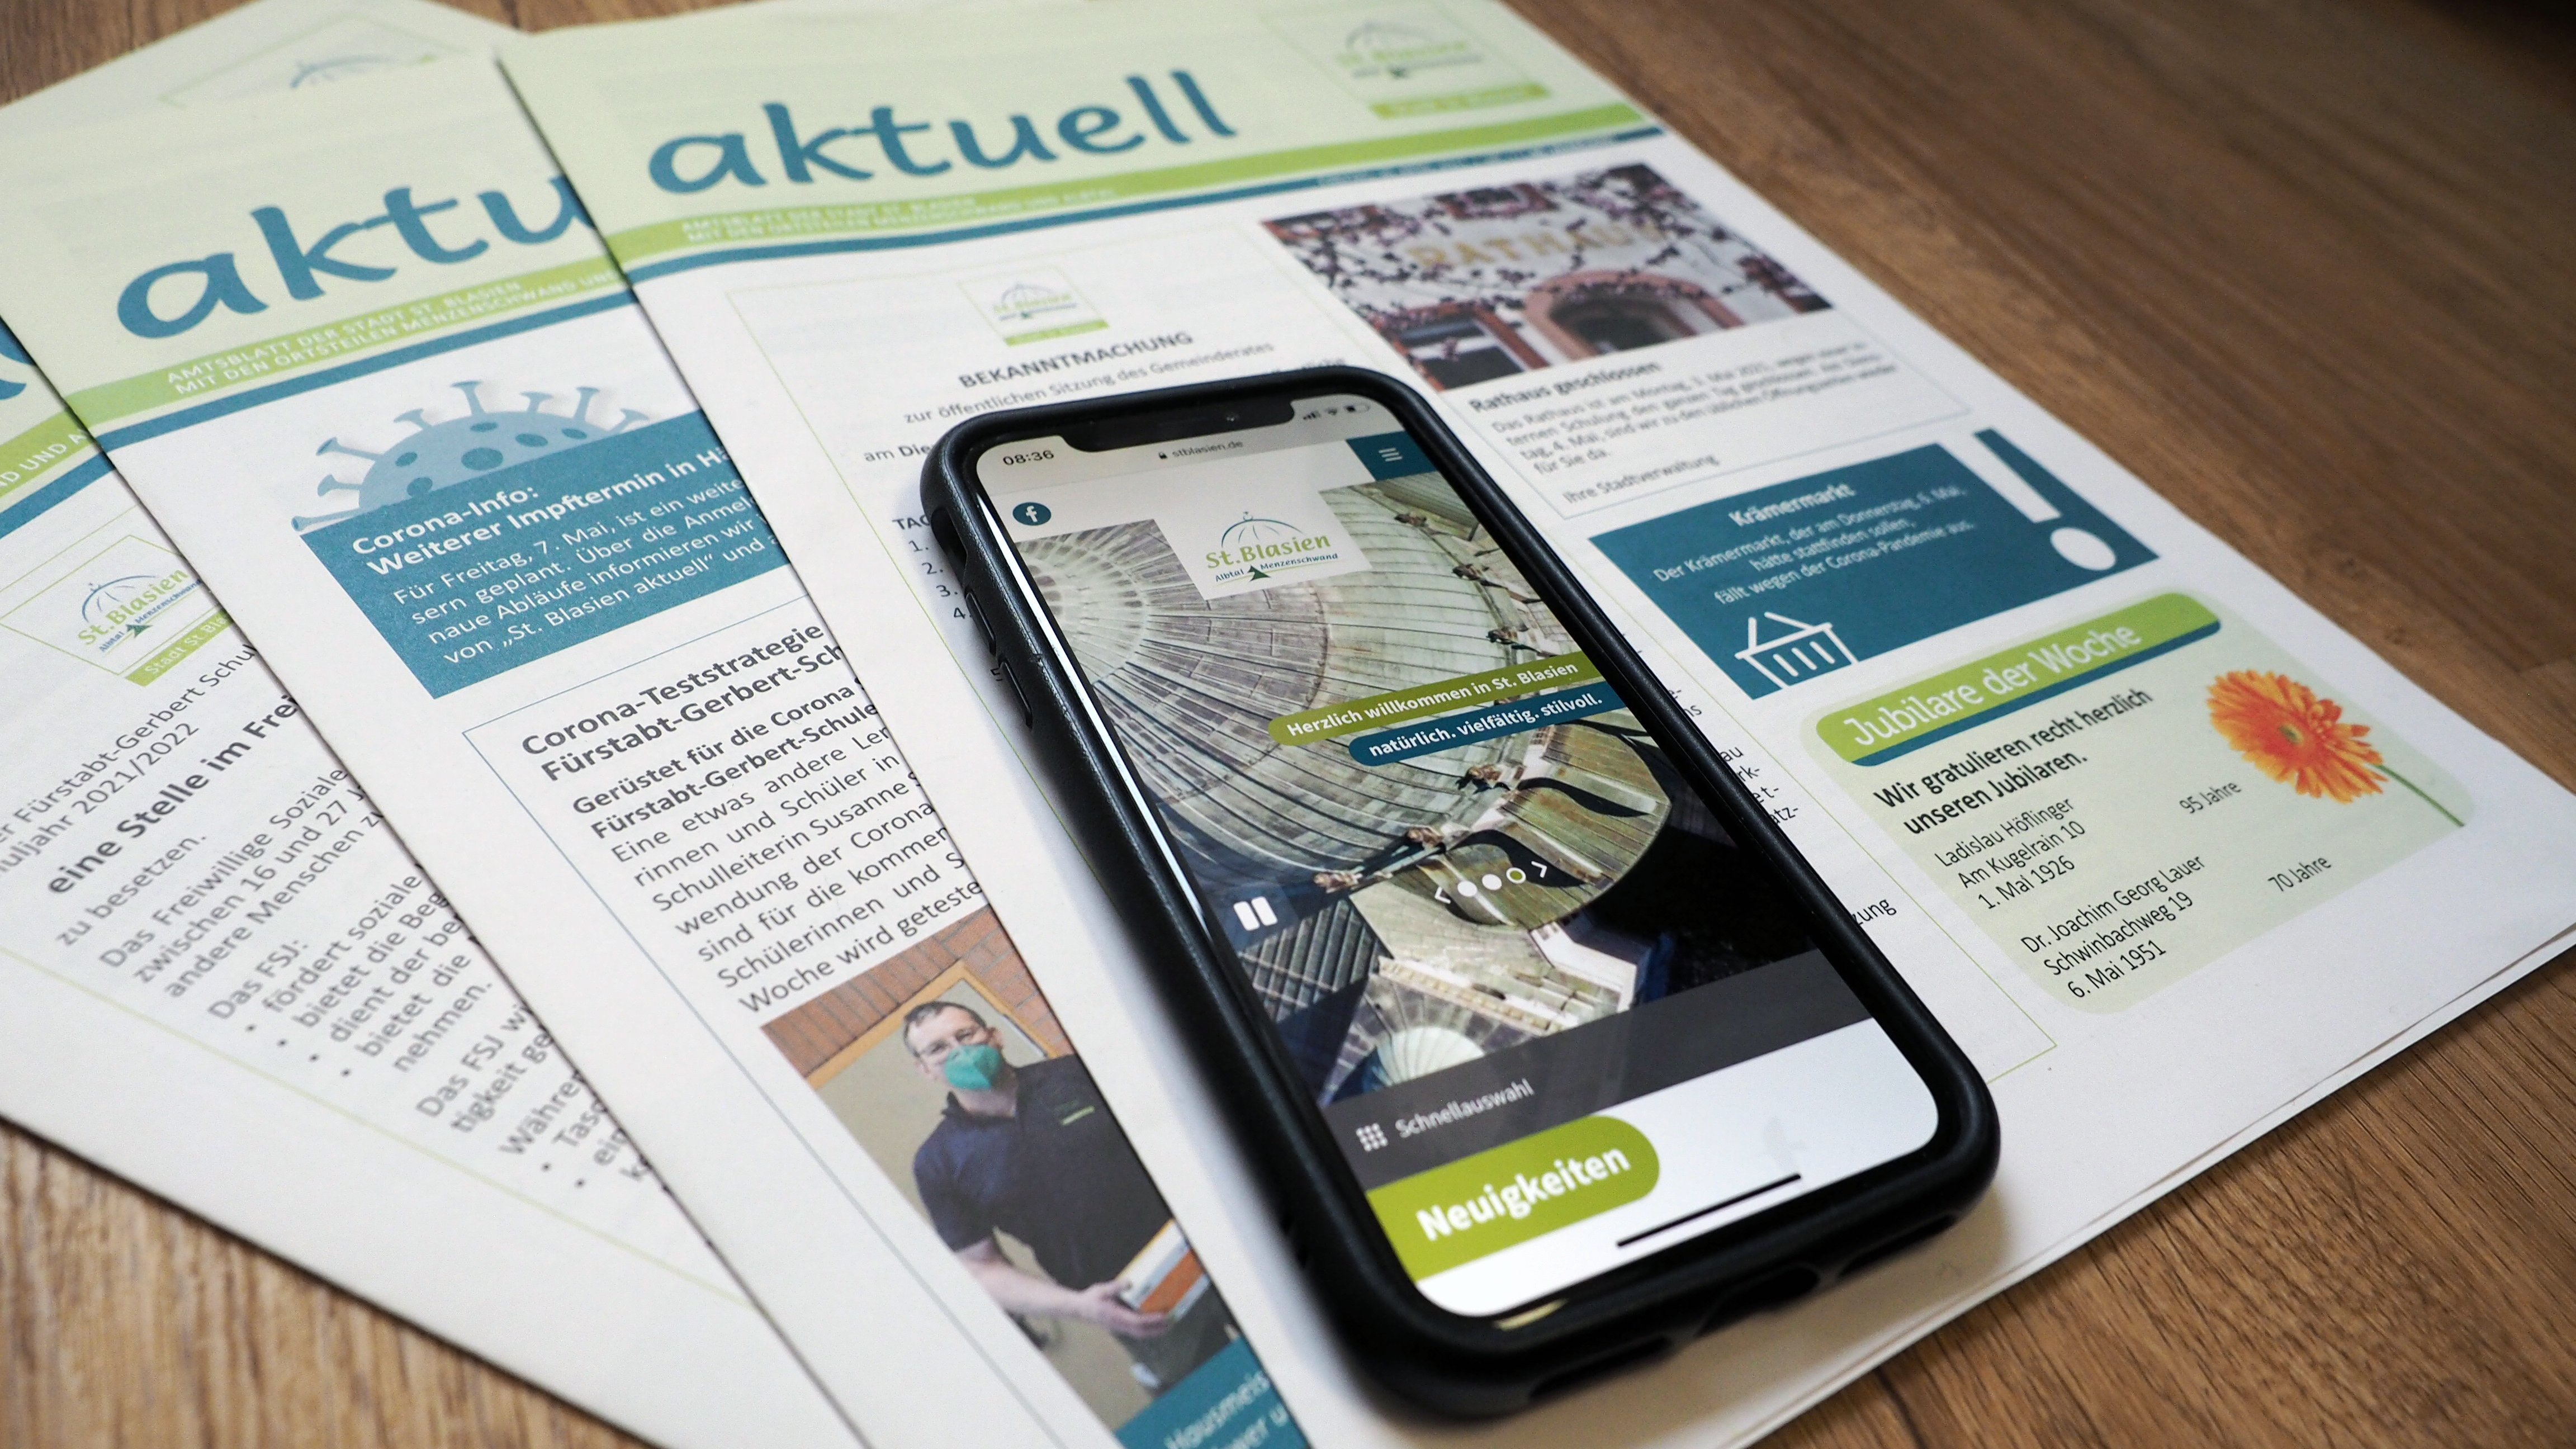  Das Bild zeigt verschiedene Ausgaben des Amtsblatts St. Blasien aktuell und ein Smartphone mit der mobilen Version von www.stblasien.de 